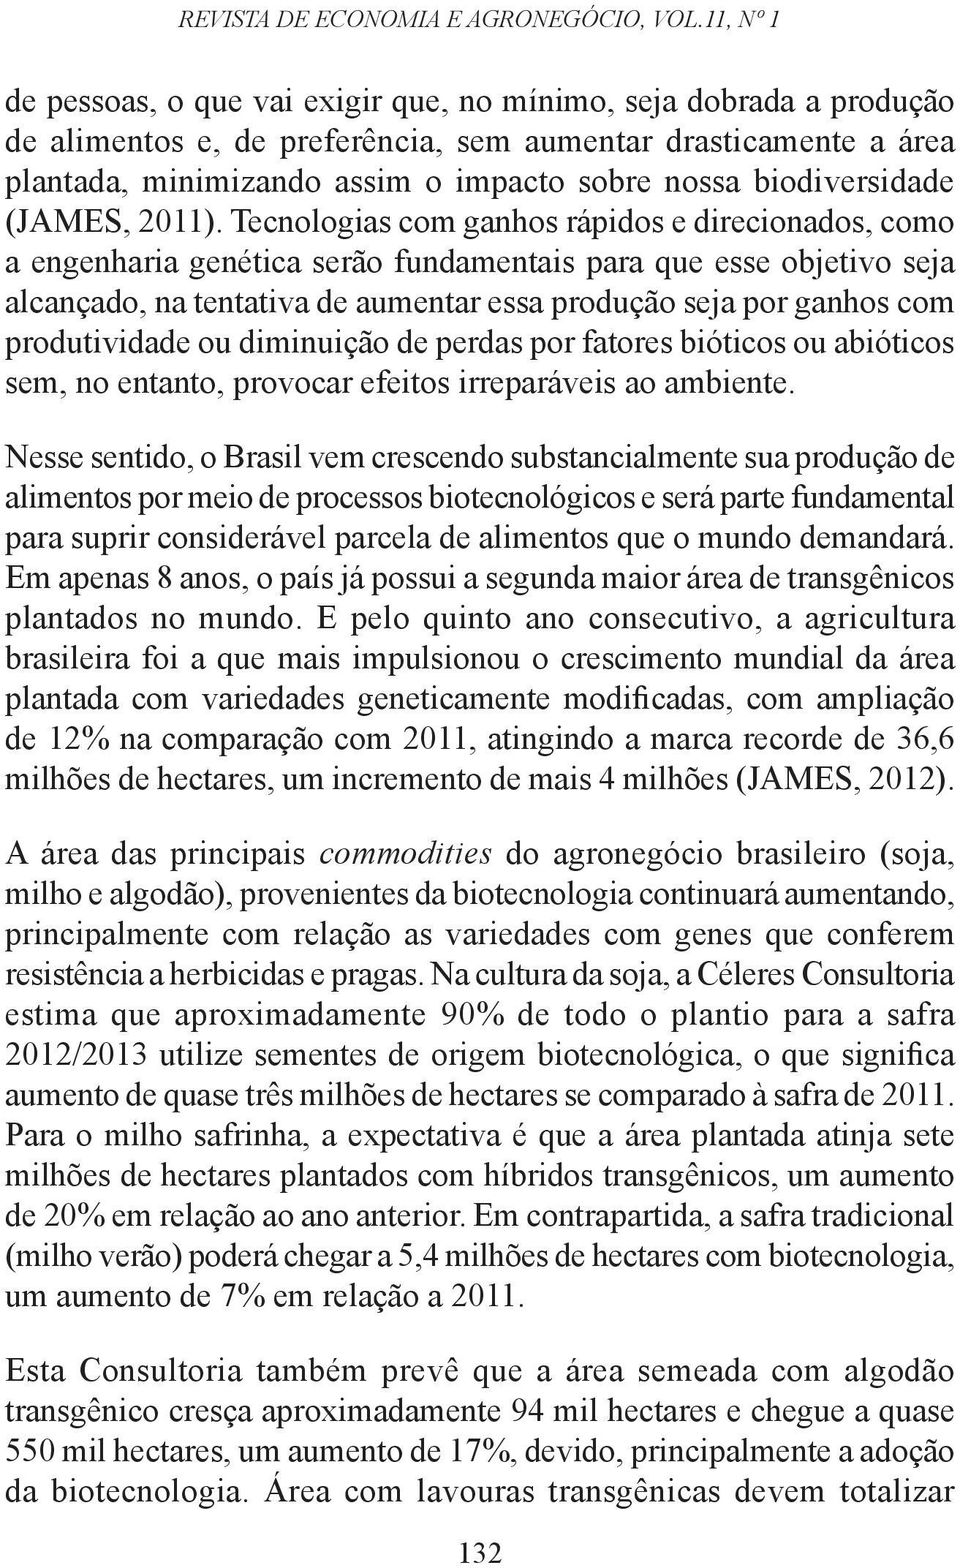 biodiversidade (JAMES, 2011).